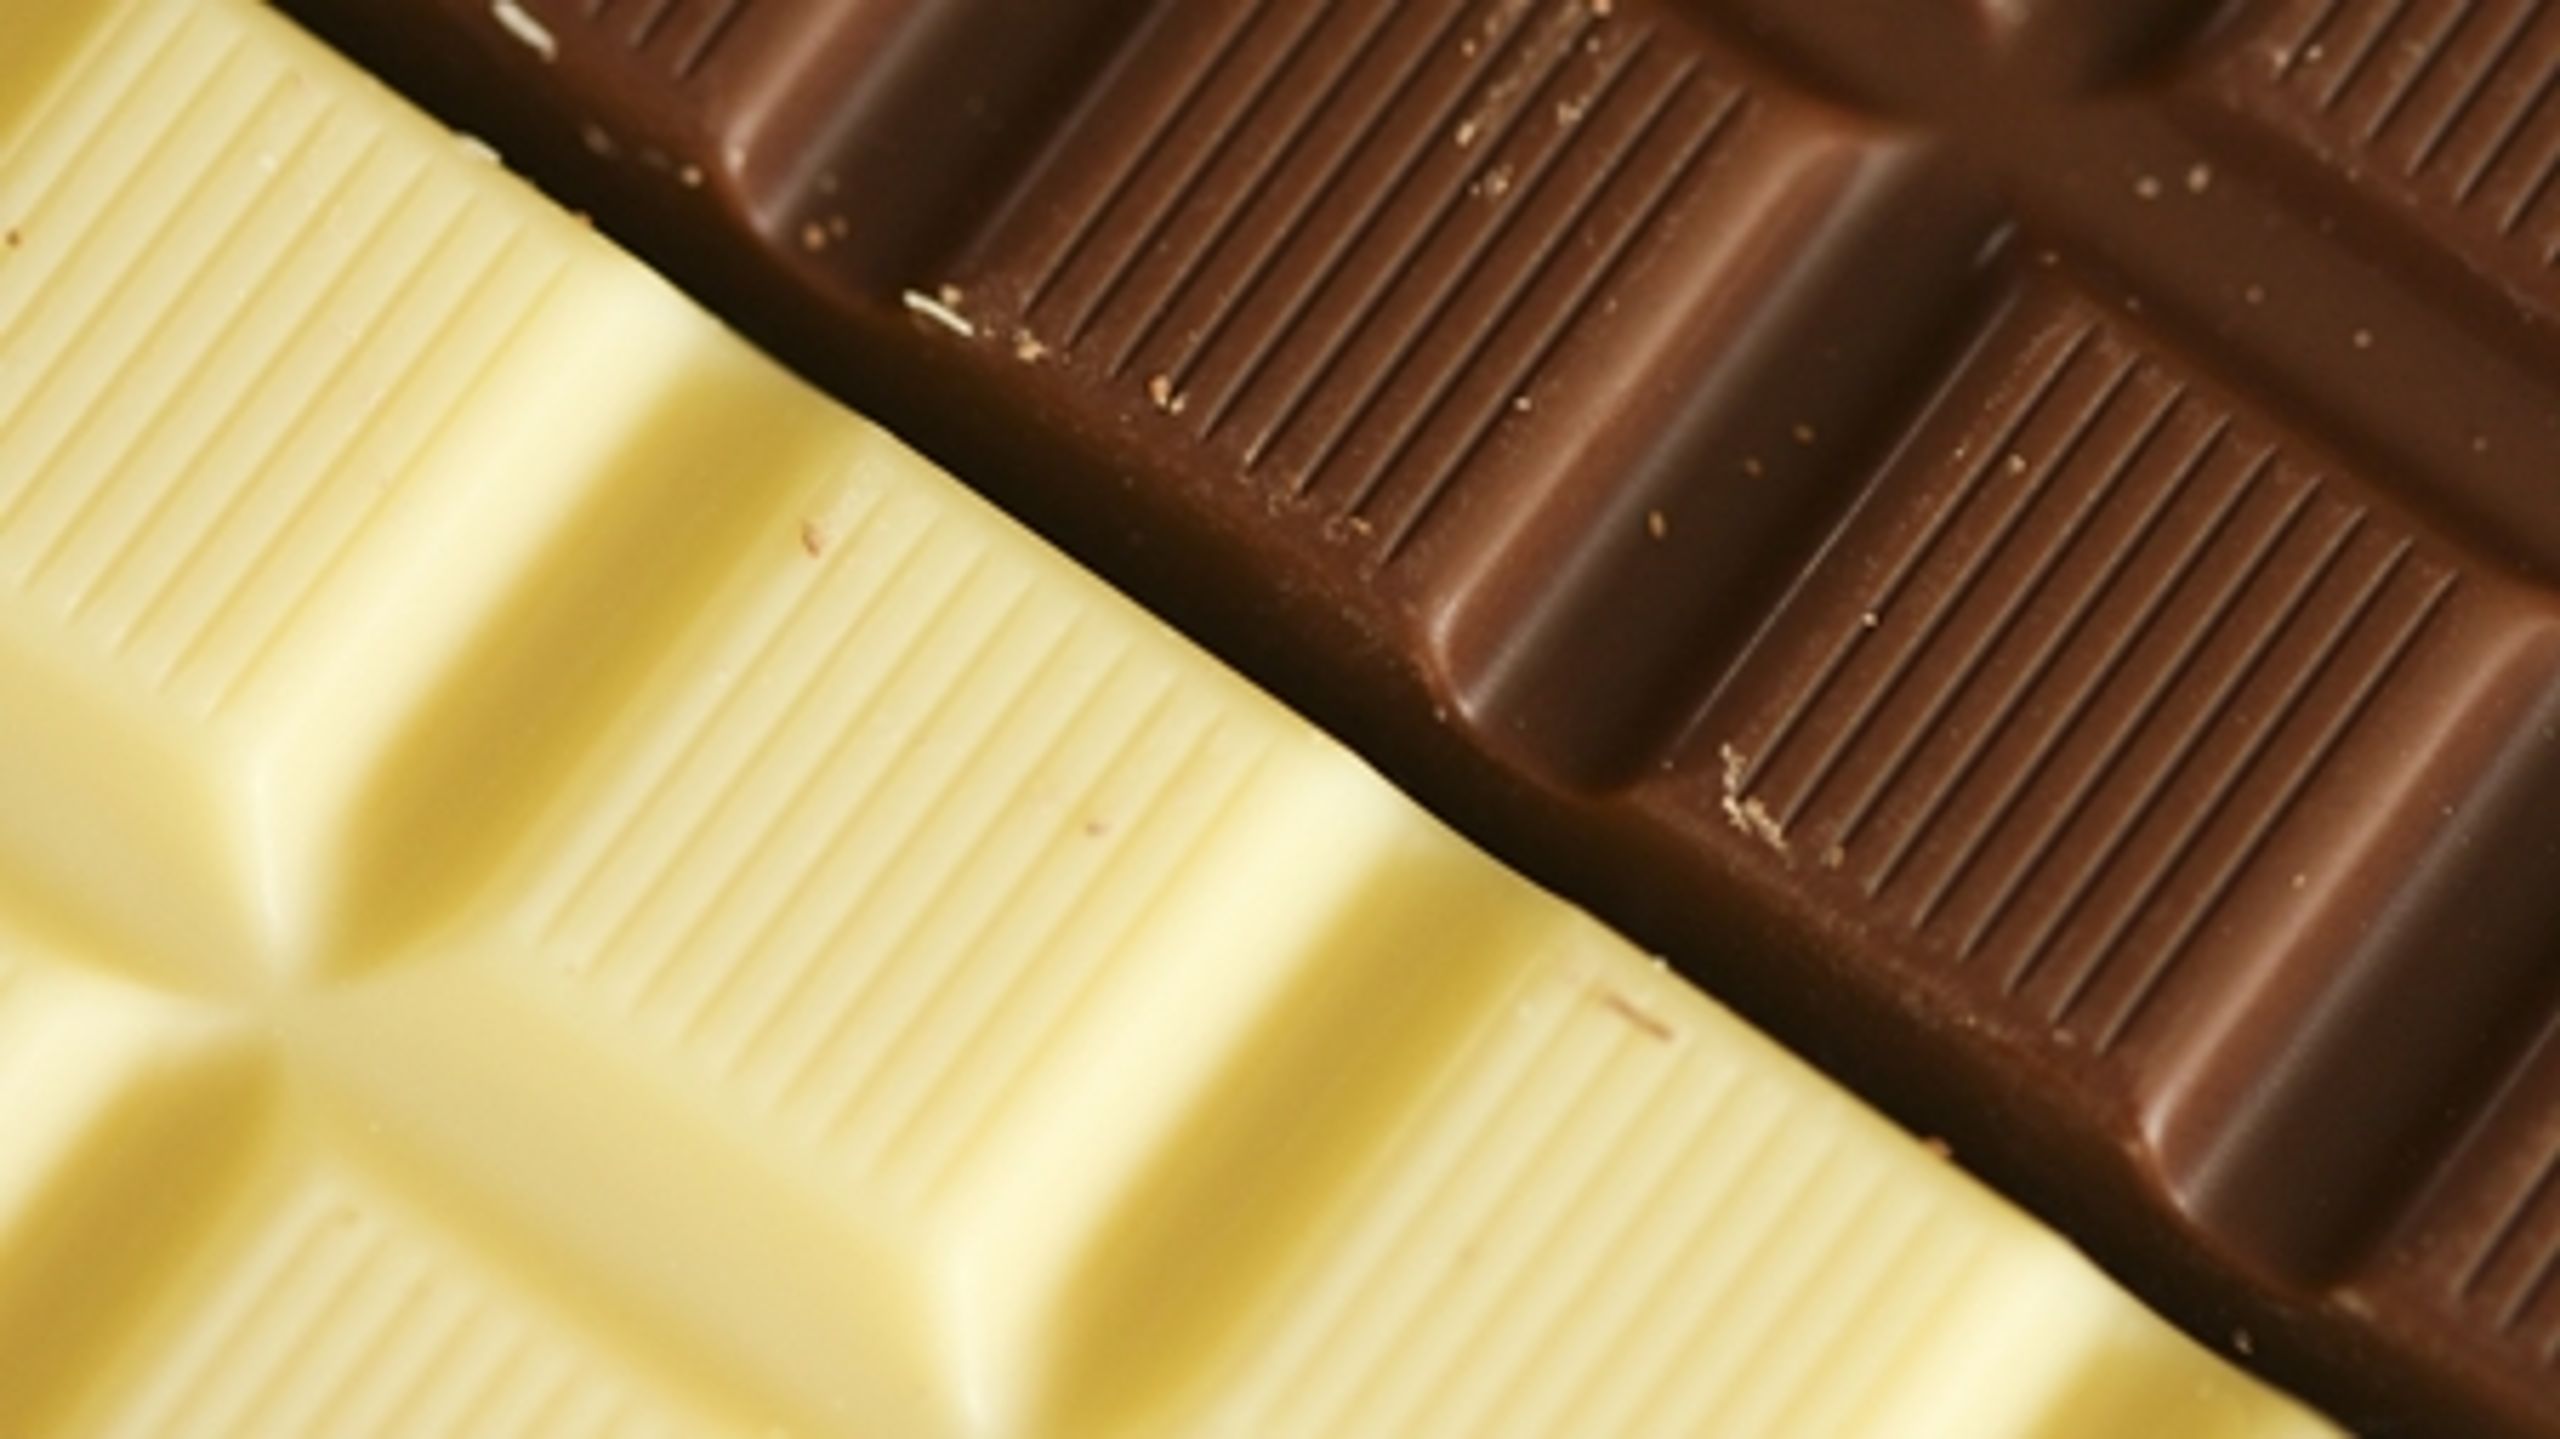 Ifølge Forbrugerrådet kan sundhedsanprisninger eksempelvis føre til, at kalkholdigt chokolade kan blive anprist som sundt for knoglerne. 